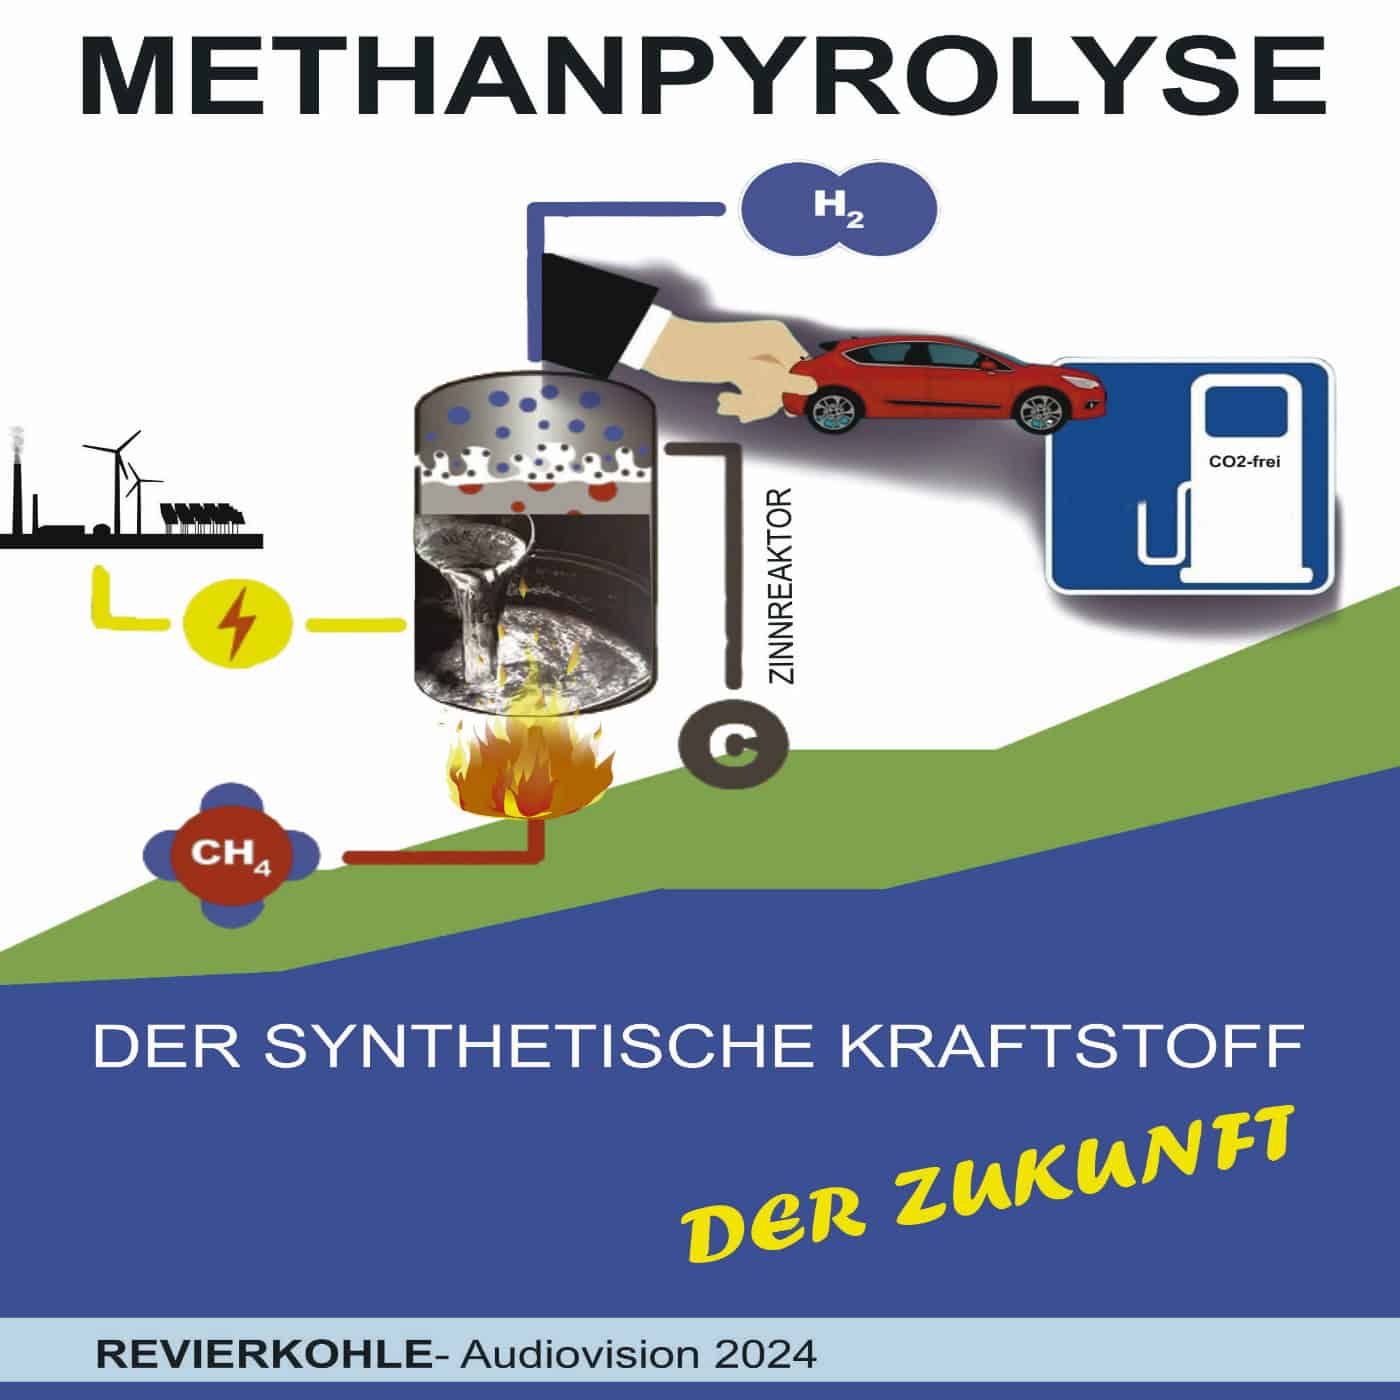 Methan-Pyrolyse